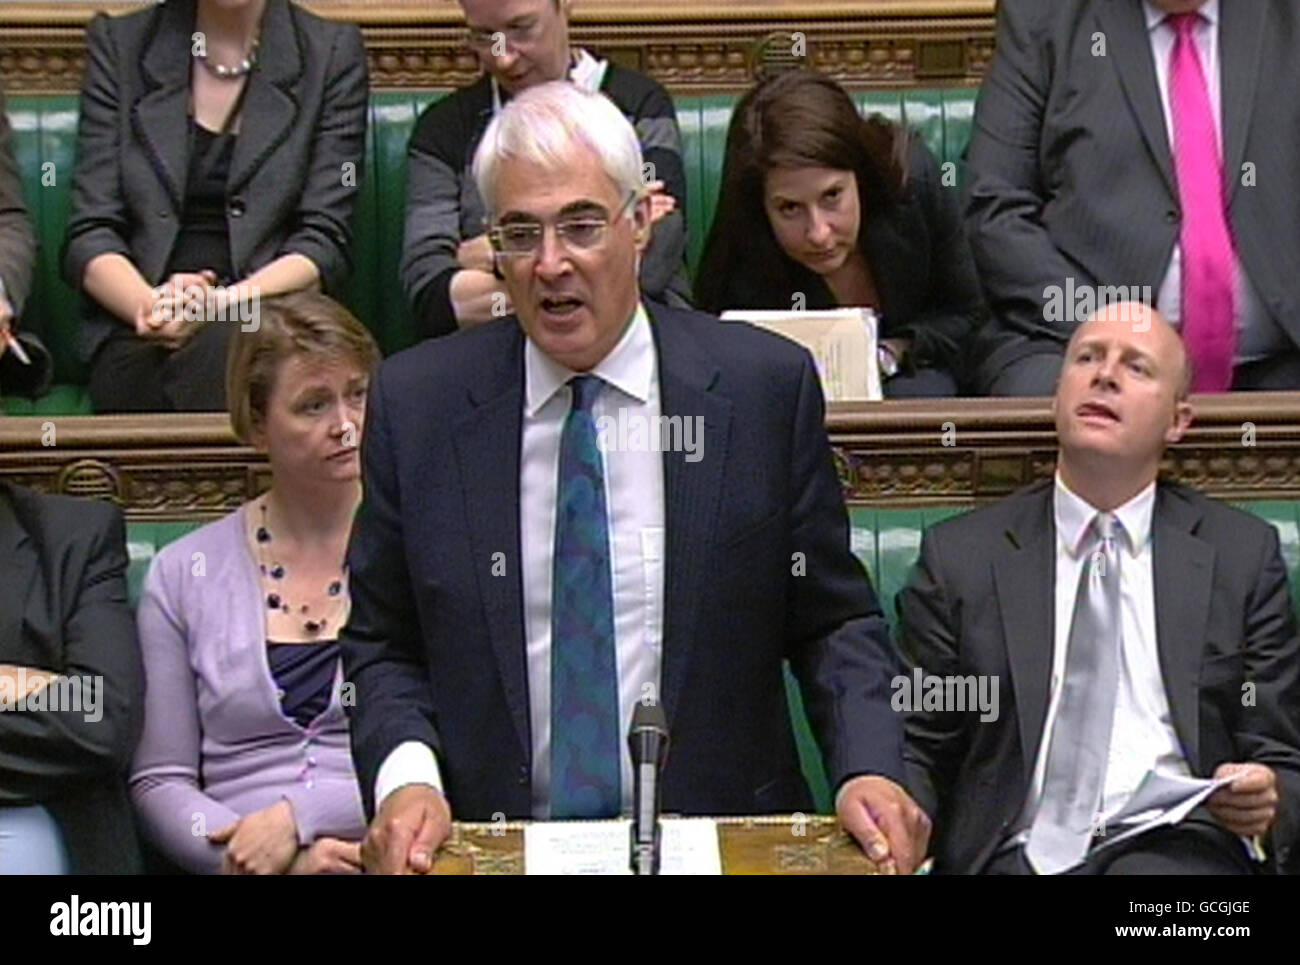 El Canciller Shadow Alistair Darling hace una pregunta sobre los recortes de gastos del Gobierno en la Cámara de los Comunes, en el centro de Londres. Foto de stock